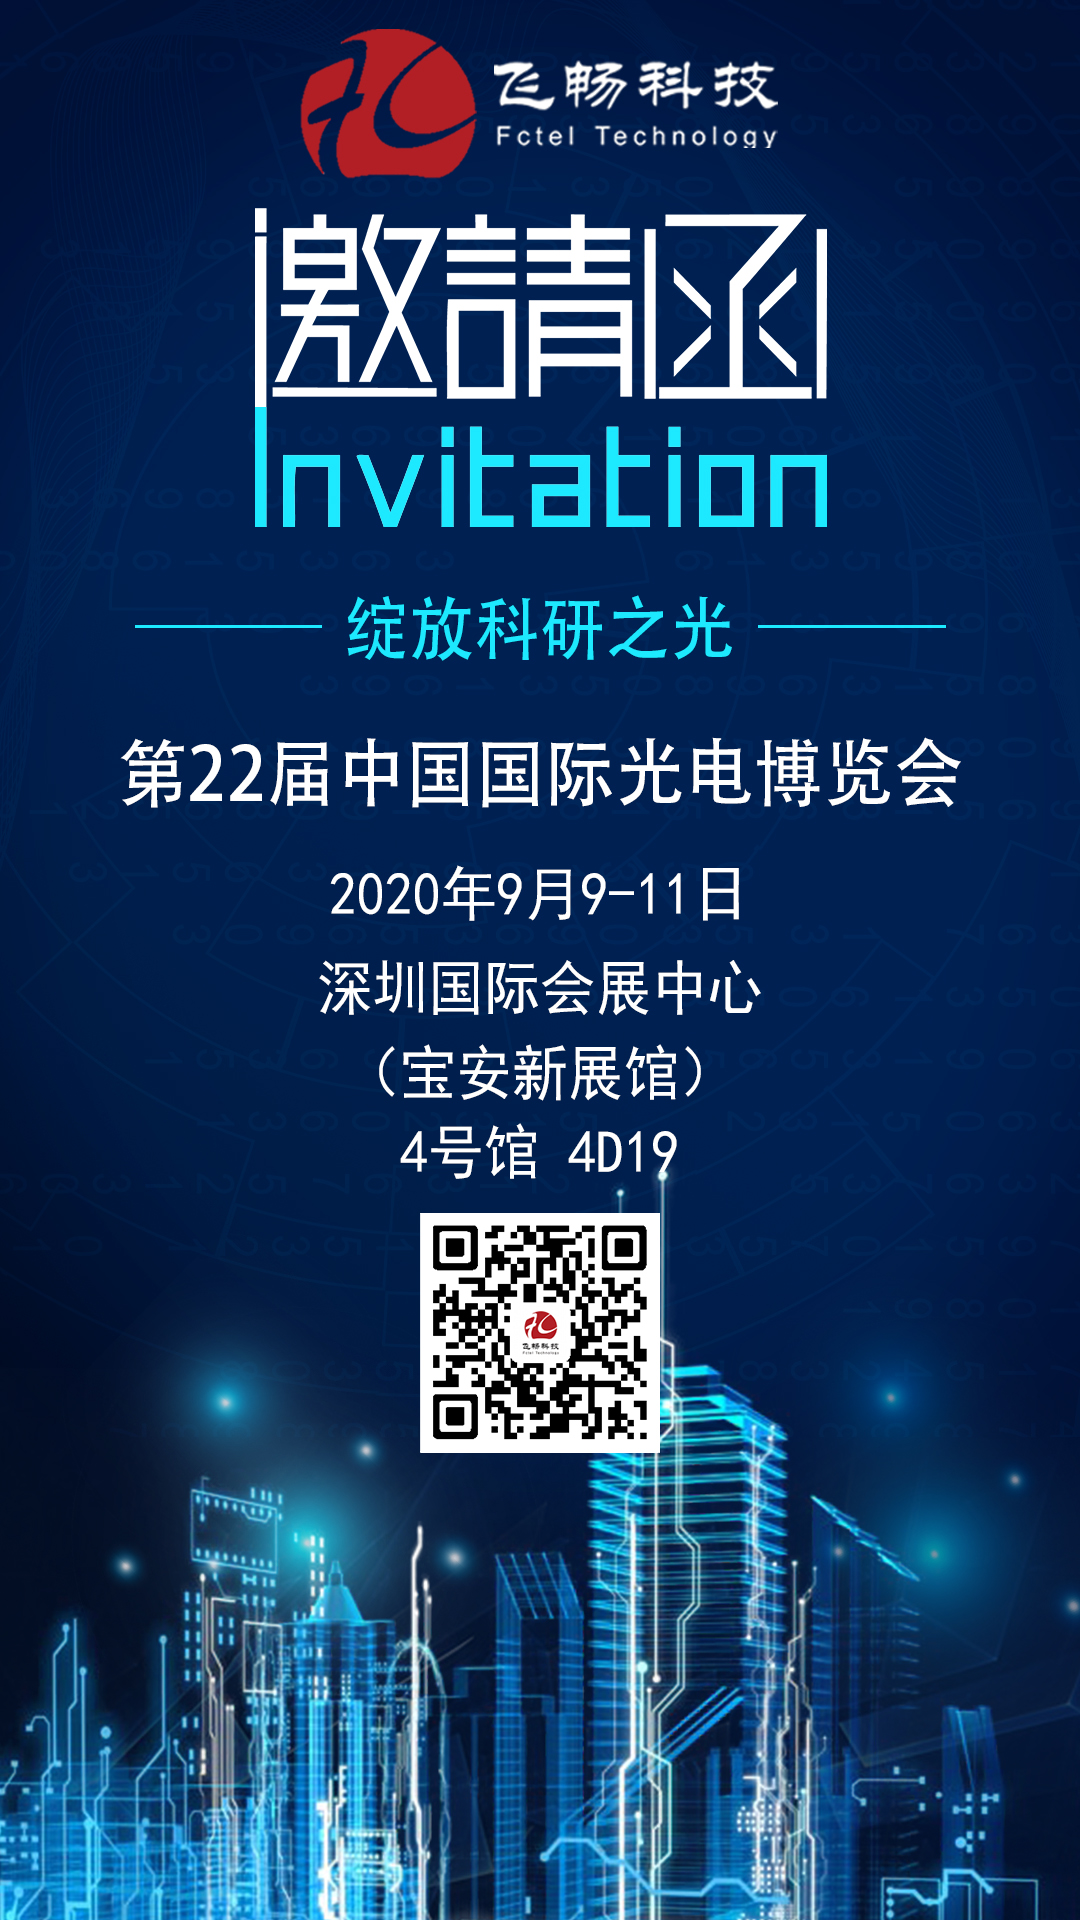 飞畅科技-邀您参加第22届中国国际光电博览会